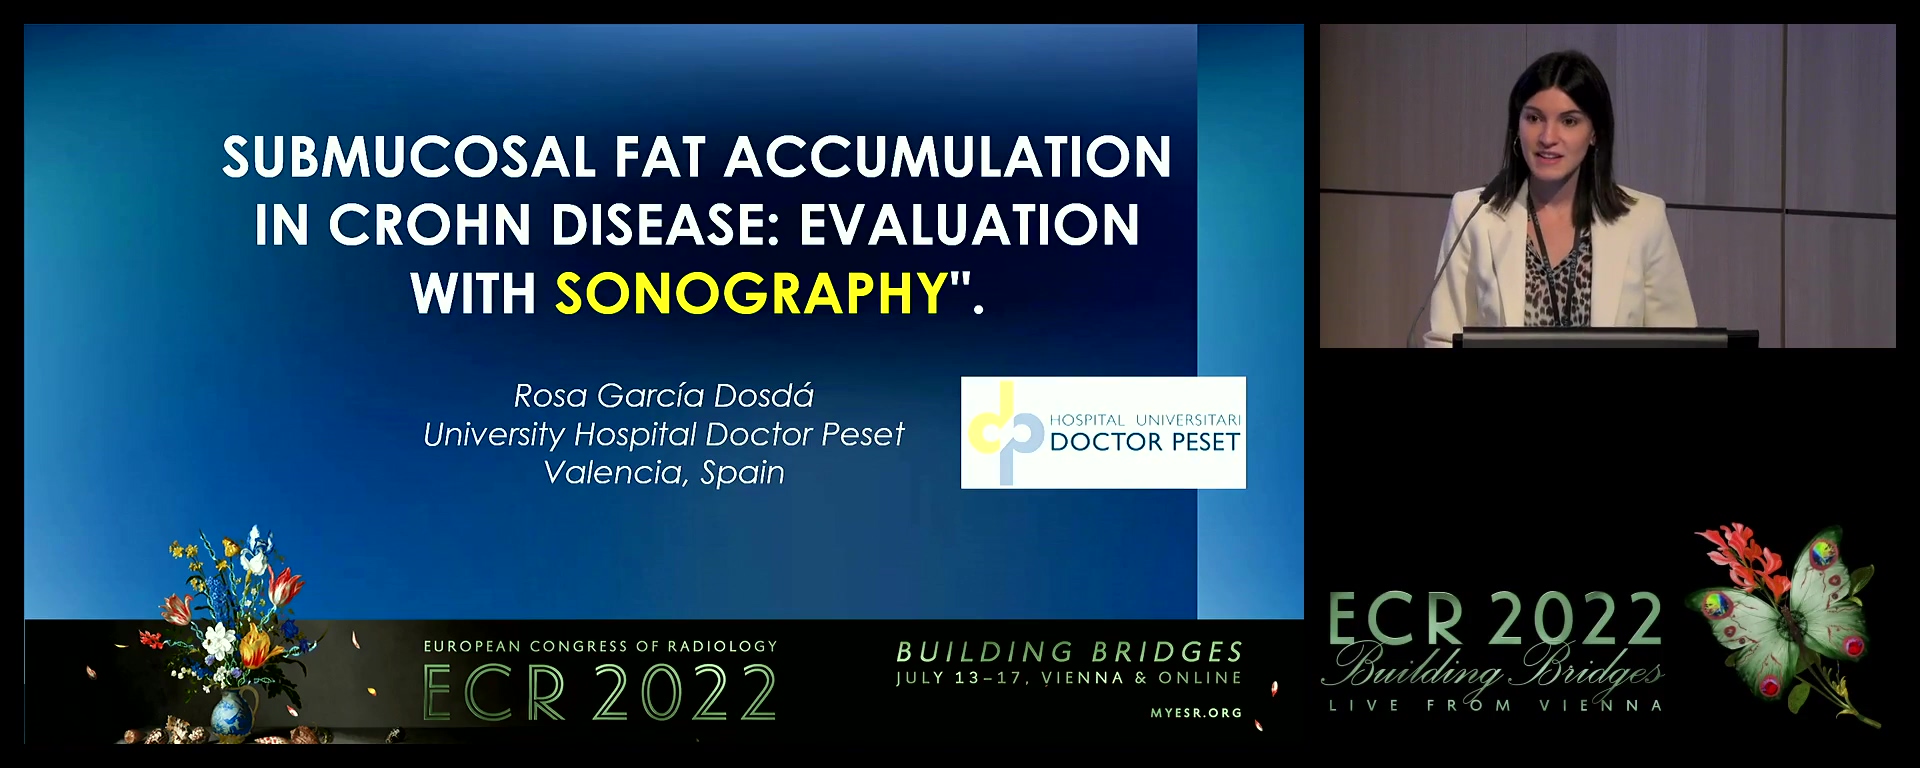 Submucosal fat accumulation in Crohn's disease: evaluation with sonography - Rosa Garcia Dosda, valencia / ES